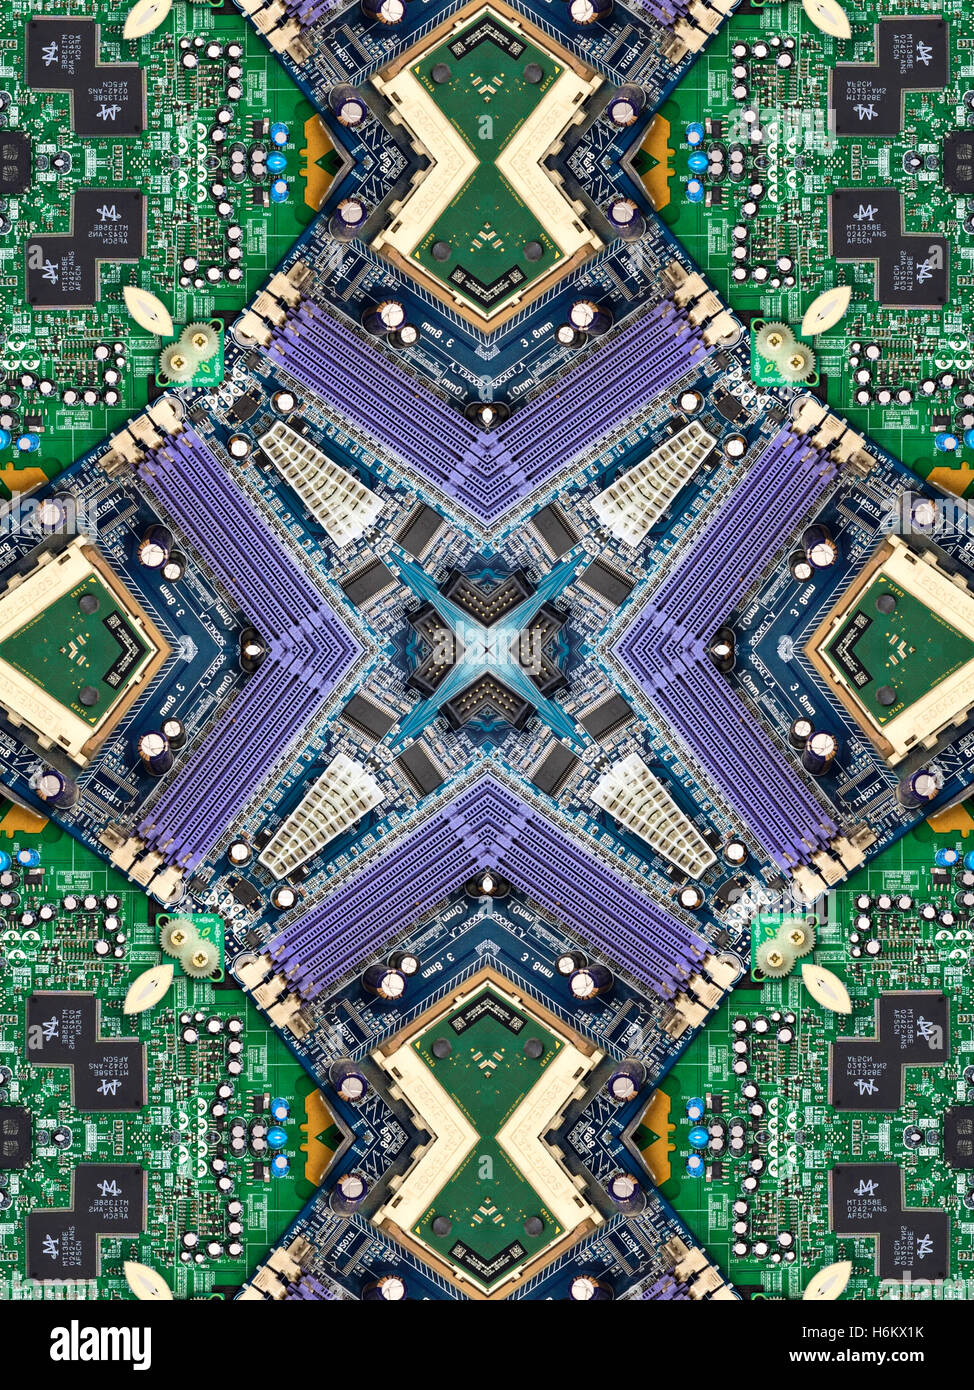 Un kaléidoscope image faite de l'intérieur d'un ordinateur - sa carte mère, puce d'ordinateur, et les composants électroniques. Banque D'Images